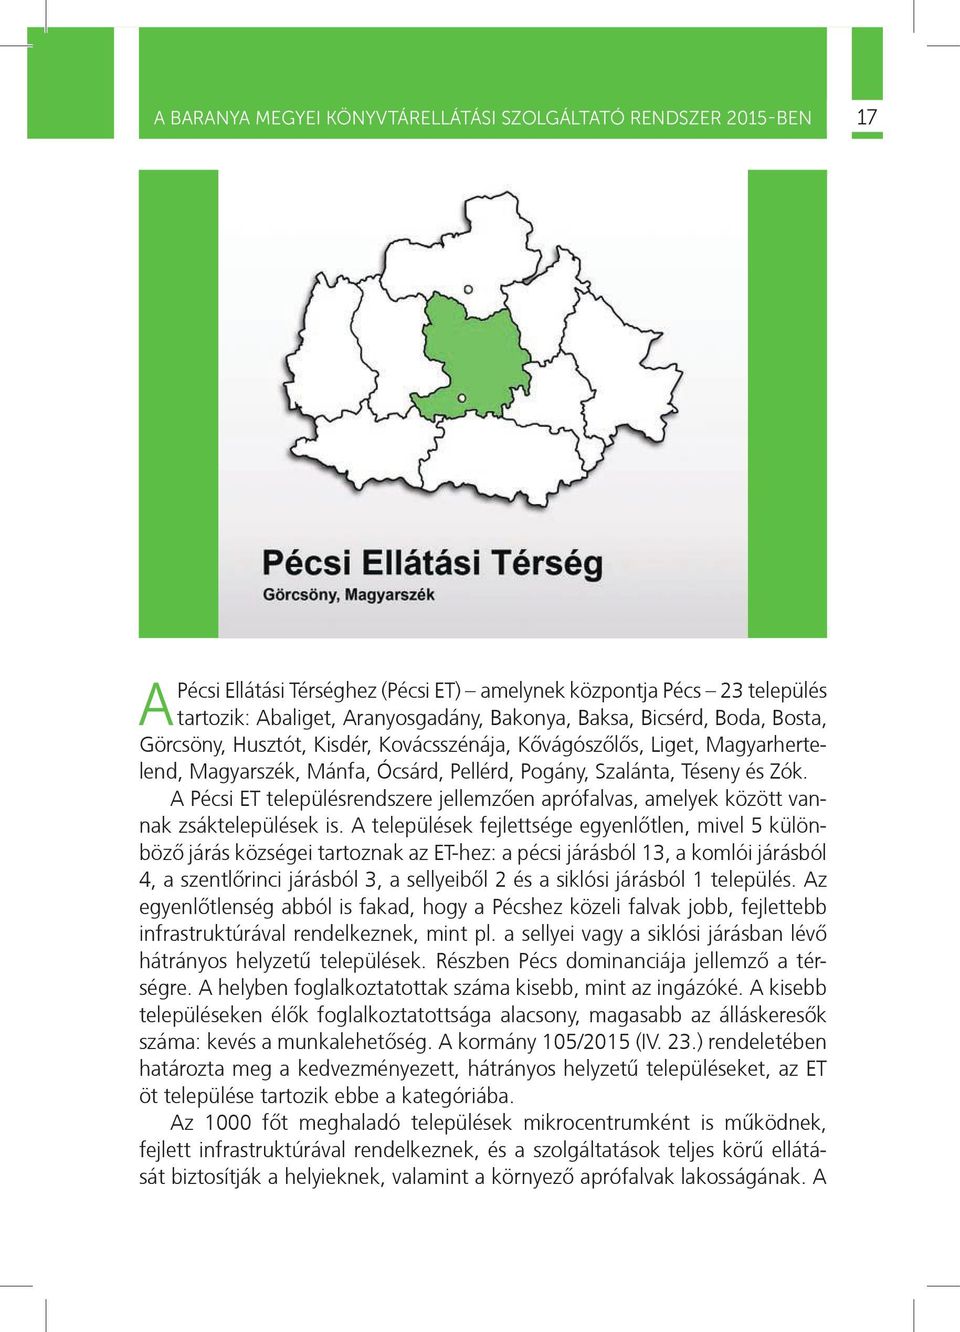 A Pécsi ET településrendszere jellemzõen aprófalvas, amelyek között vannak zsáktelepülések is.